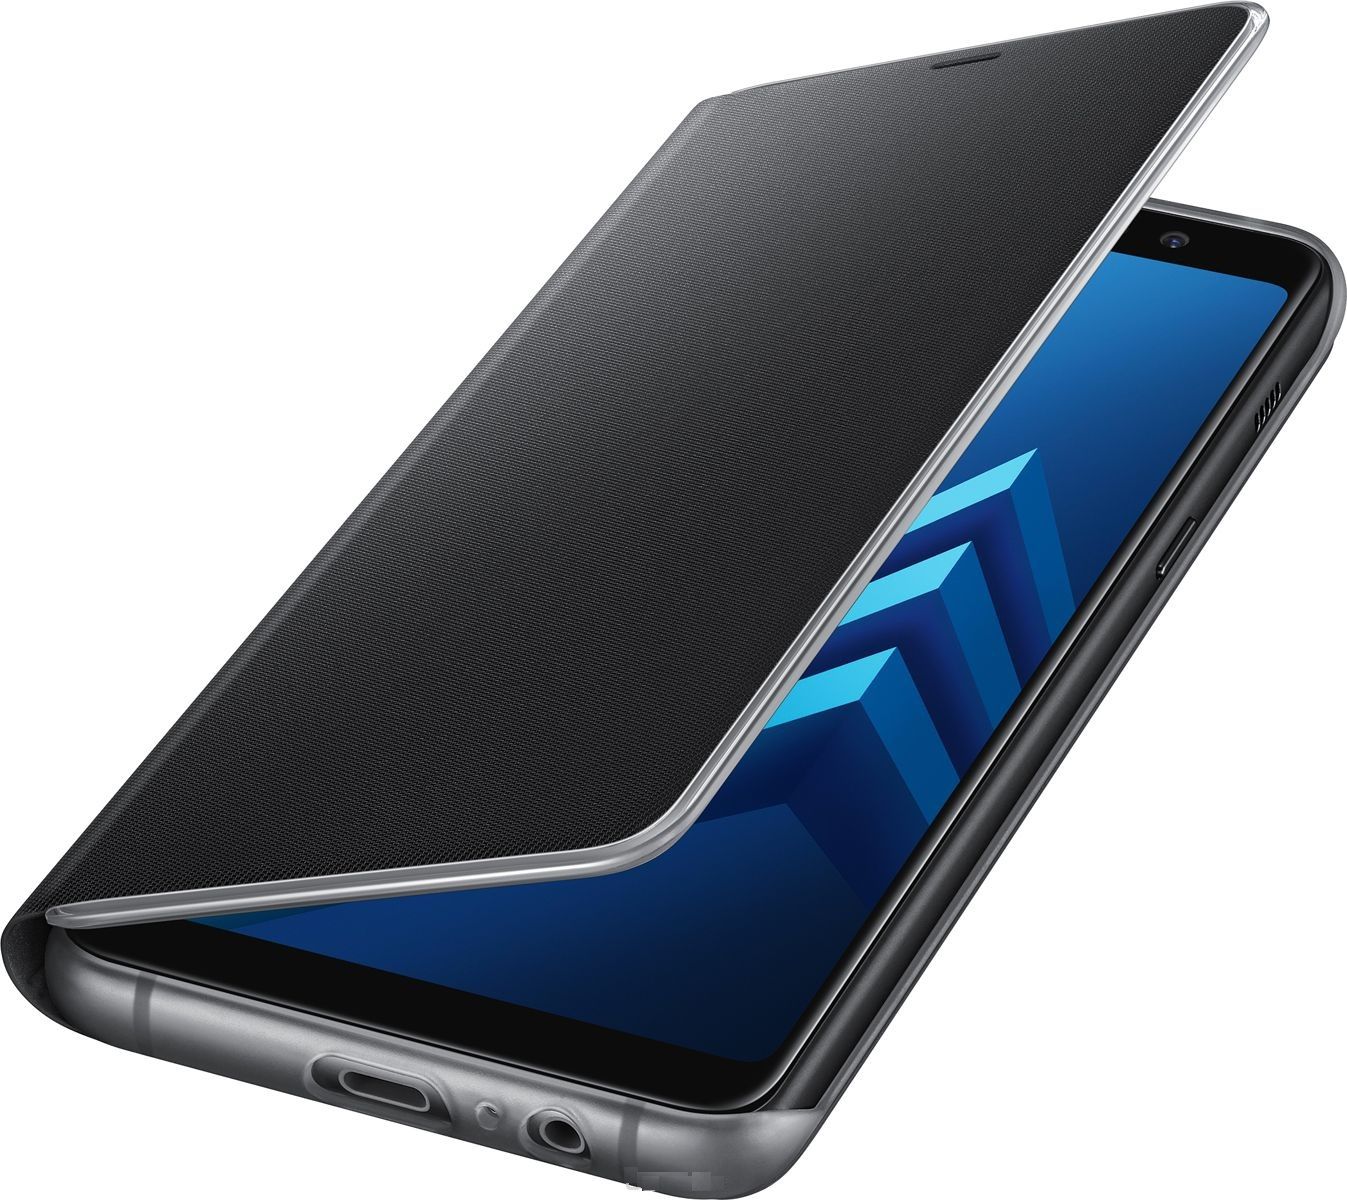 Samsung Чехол-книжка FlipCover Neon для Samsung Galaxy A8 (2018) SM-A530F 